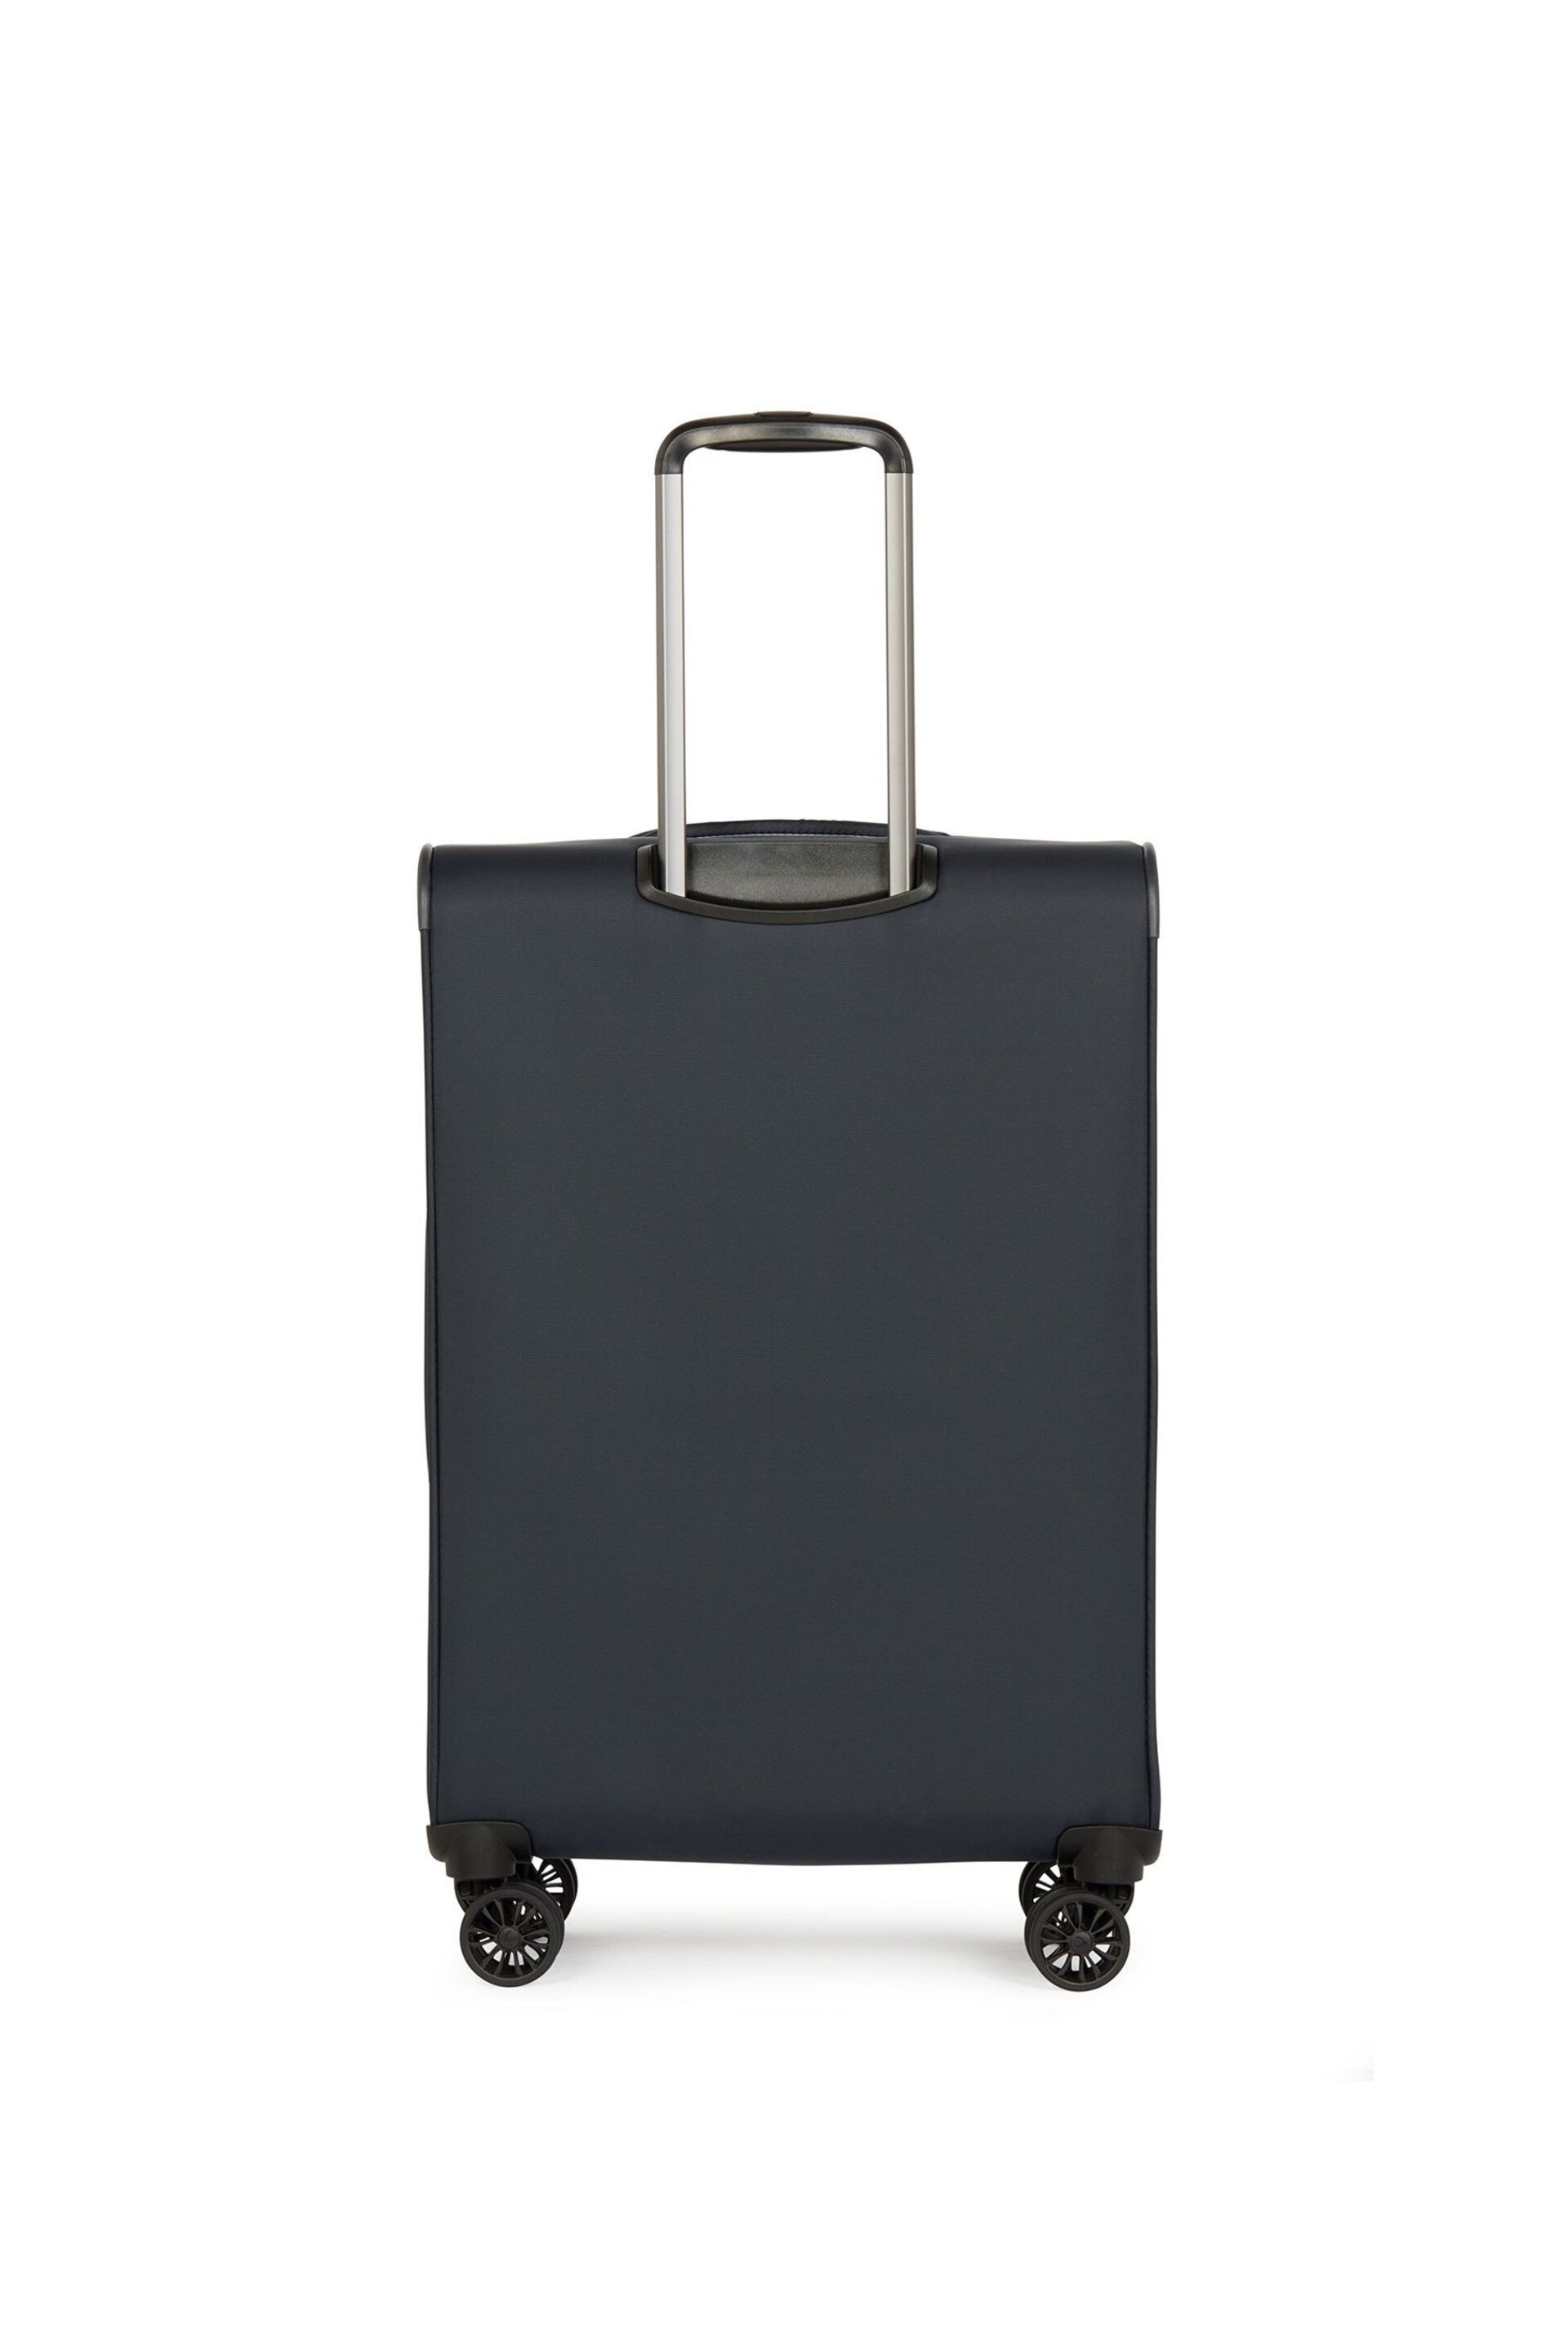 Antler Blue Brixham Medium Suitcase - Image 2 of 6